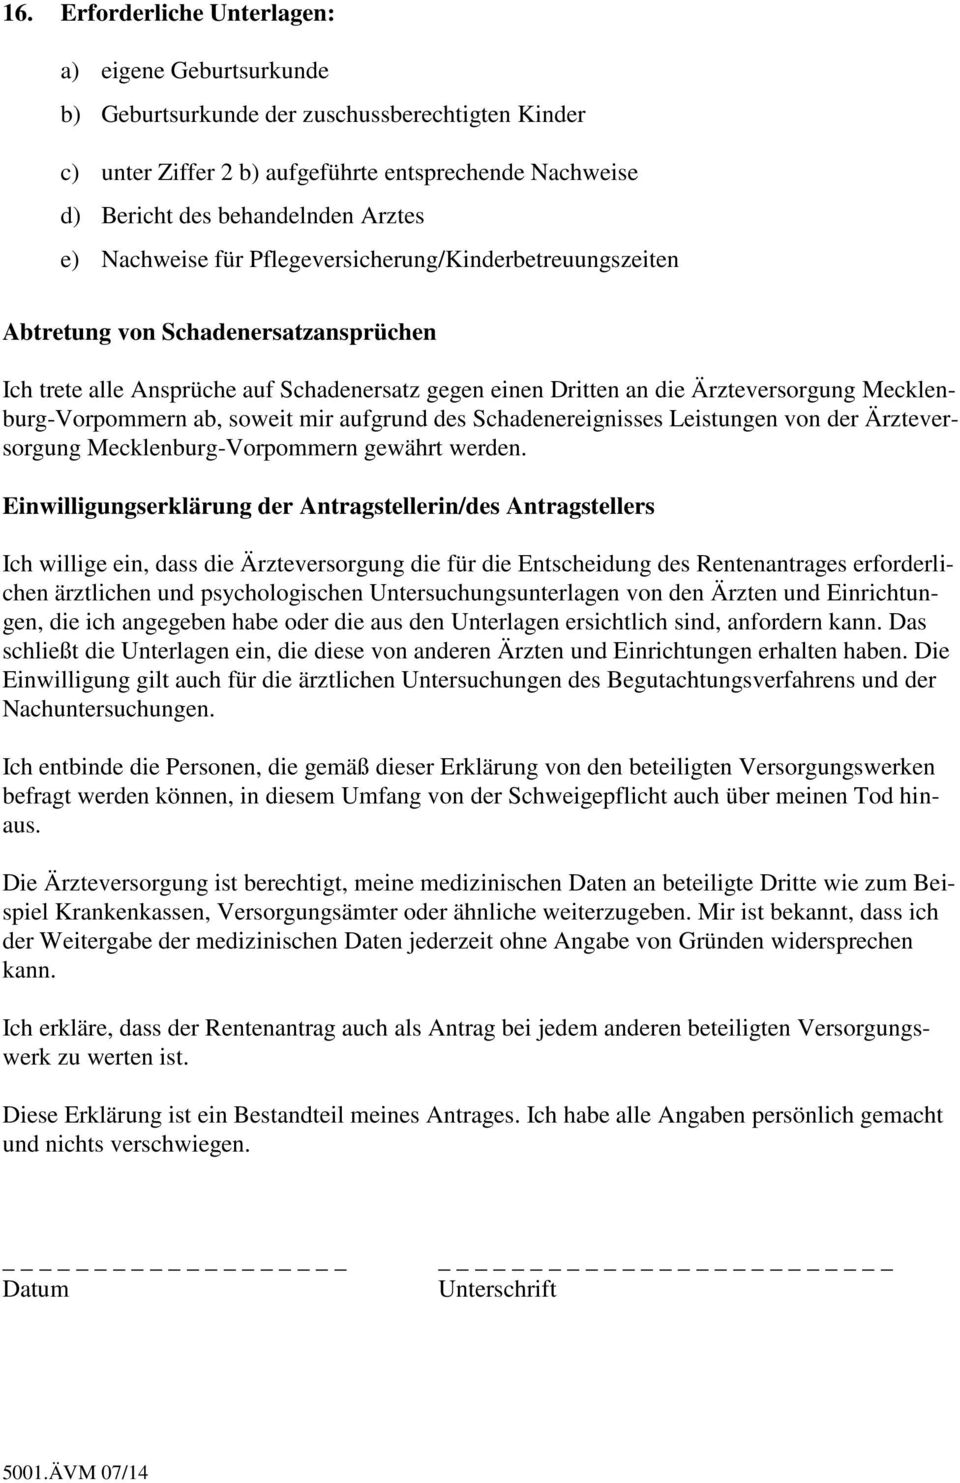 Mecklenburg-Vorpommern ab, soweit mir aufgrund des Schadenereignisses Leistungen von der Ärzteversorgung Mecklenburg-Vorpommern gewährt werden.